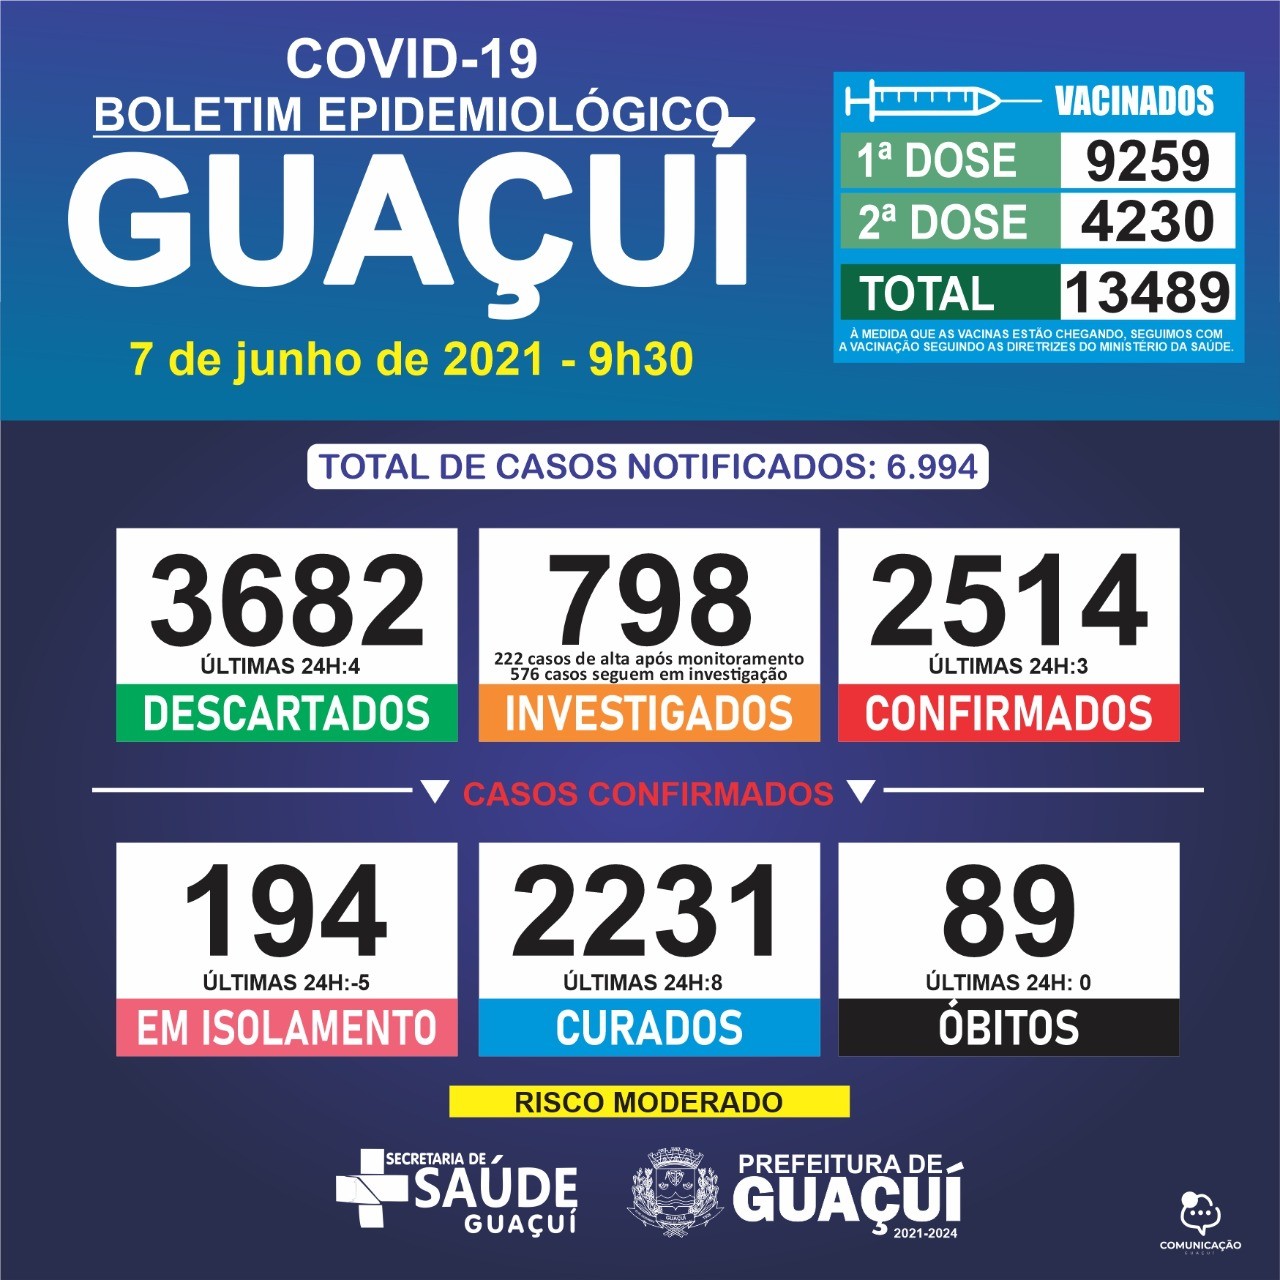 Boletim Epidemiológico 07/06/21: Guaçuí registra 3 casos confirmados de Covid-19 e 8 curados